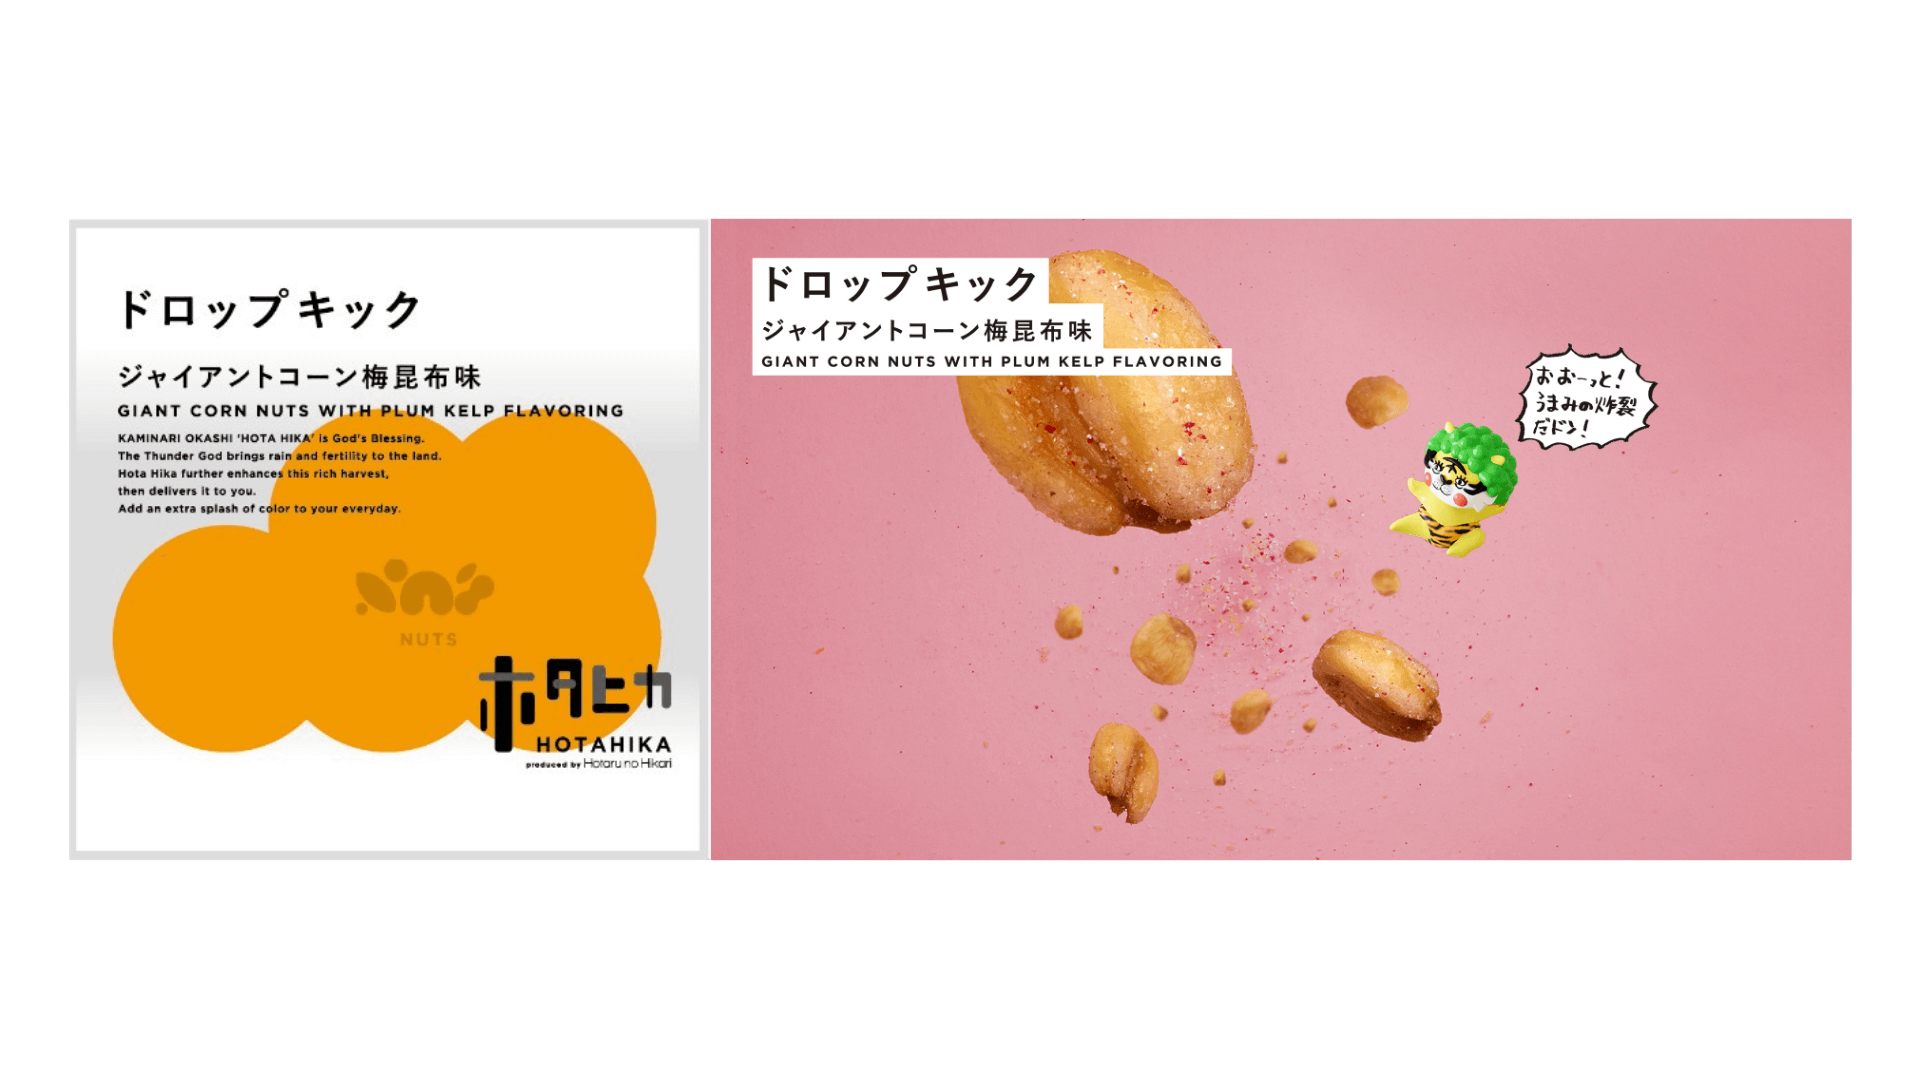 『ホタヒカ』-ジャイアントコーン梅昆布味 GIANT CORN NUTS WITH PLUM KELP FLAVORING